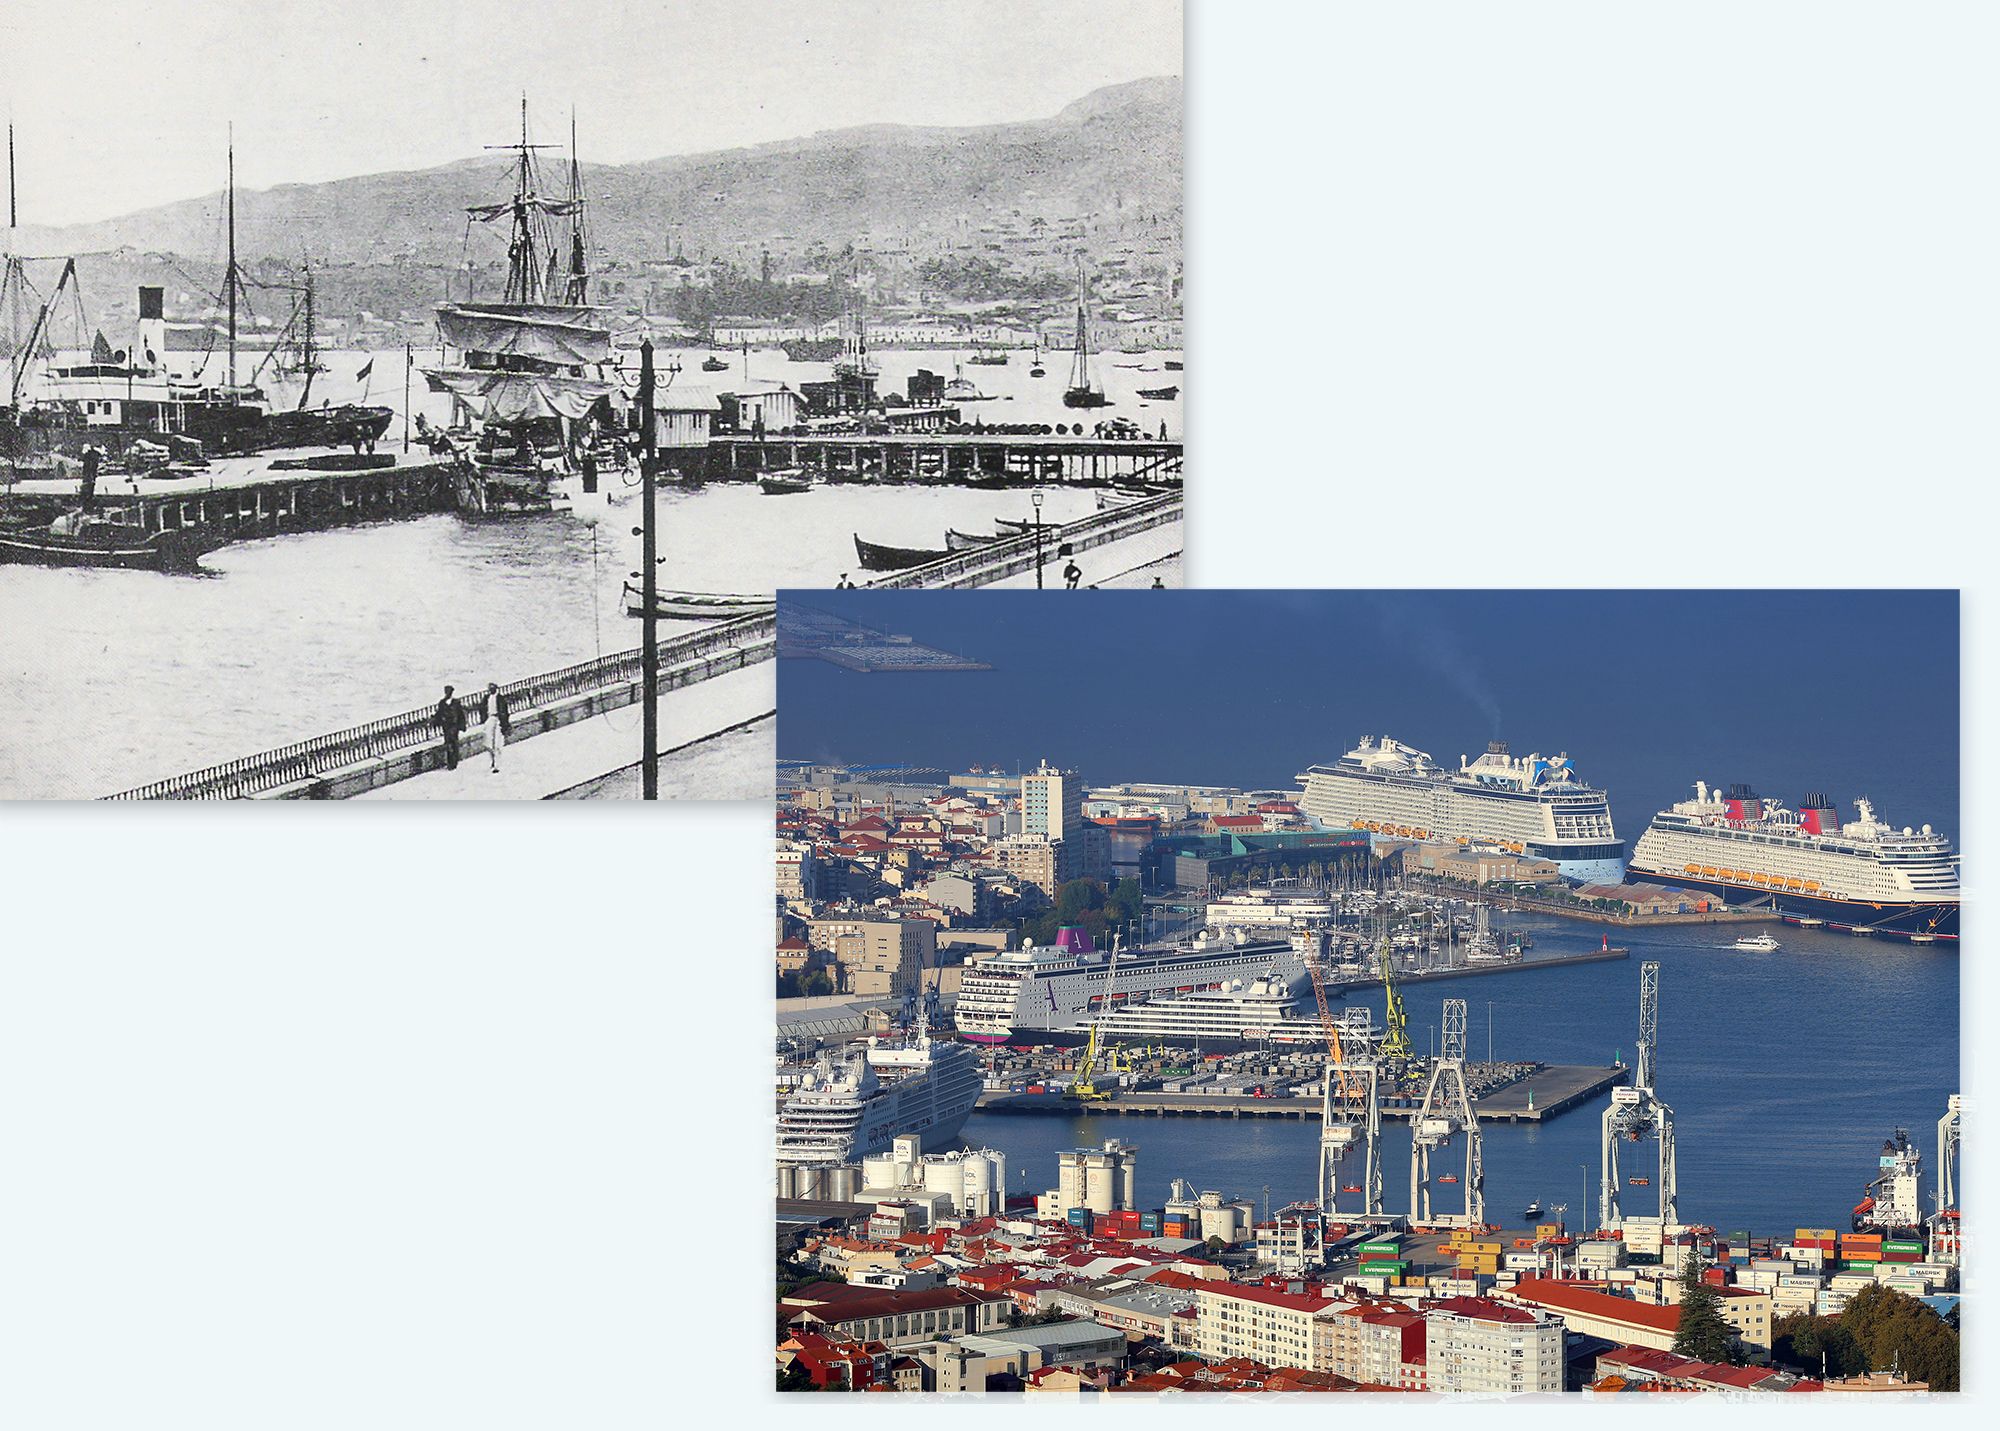 El viejo muelle de hierro en 1953 y la escala de récord de 5 cruceros este verano. / ARCHIVO y M. G. Brea